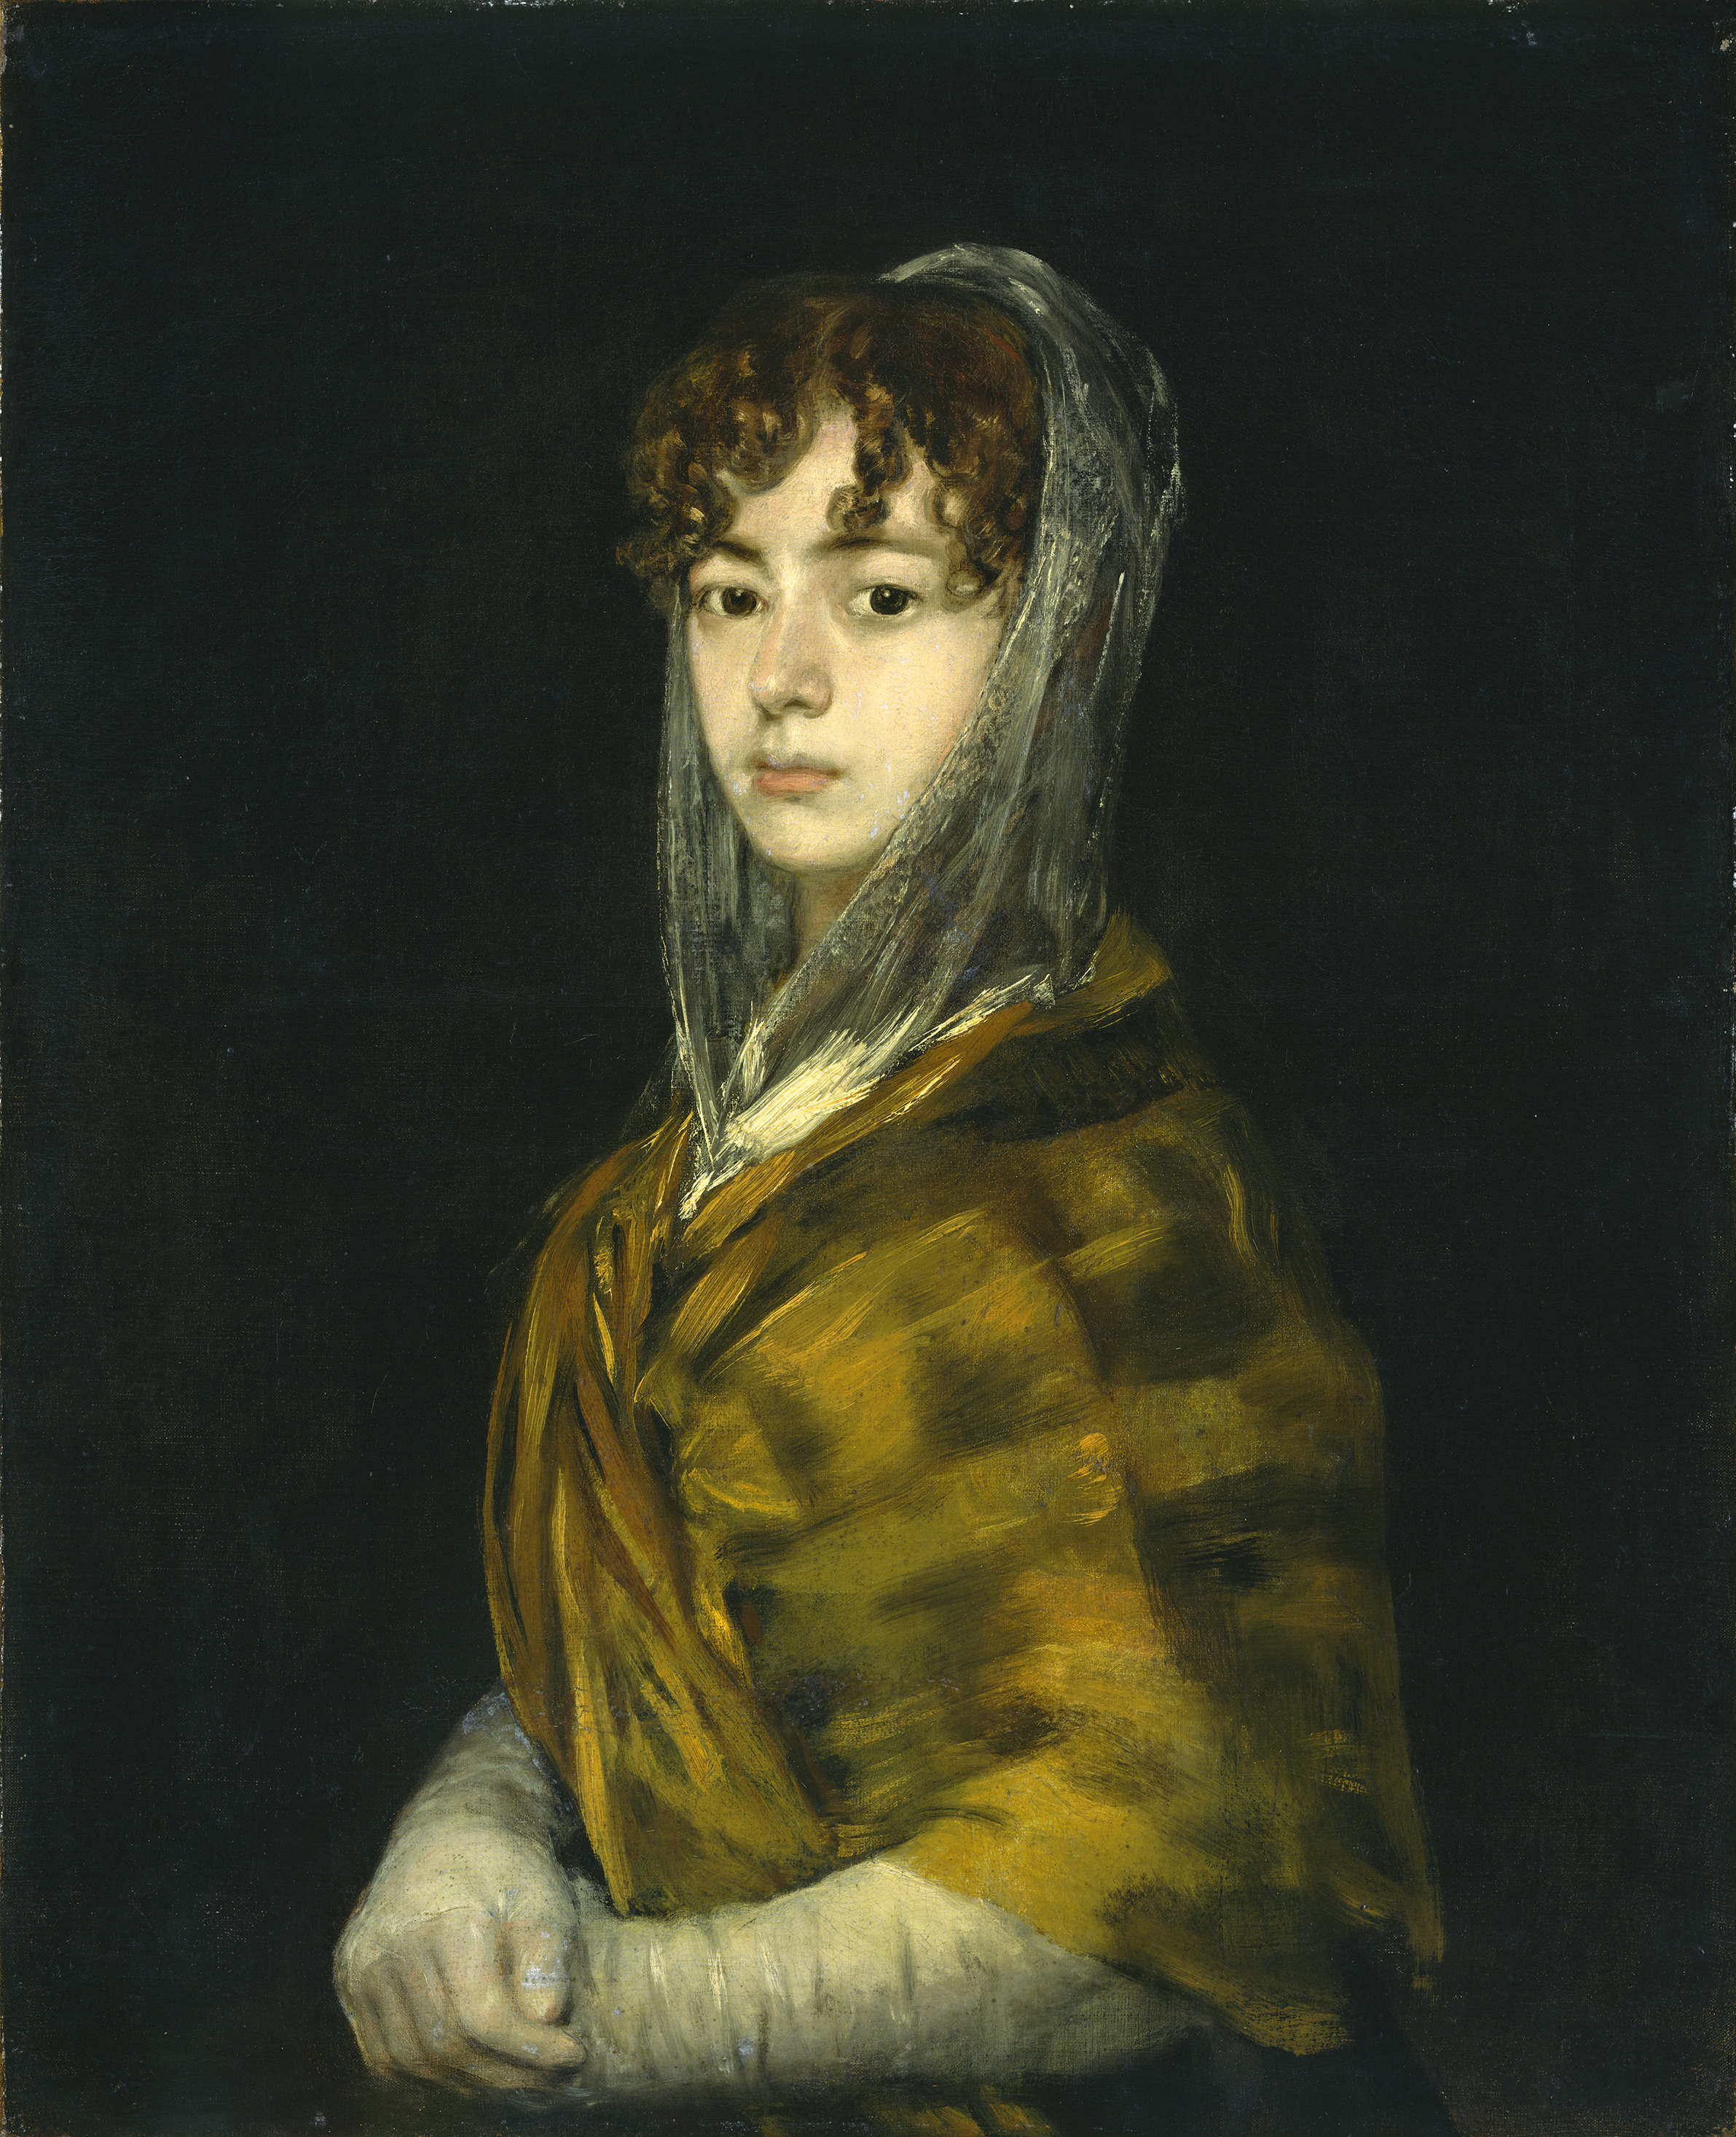 السيدة ساباسا غارسيا by Francisco Goya - حوالي 1806-1811 م - 71 x 58 سم 